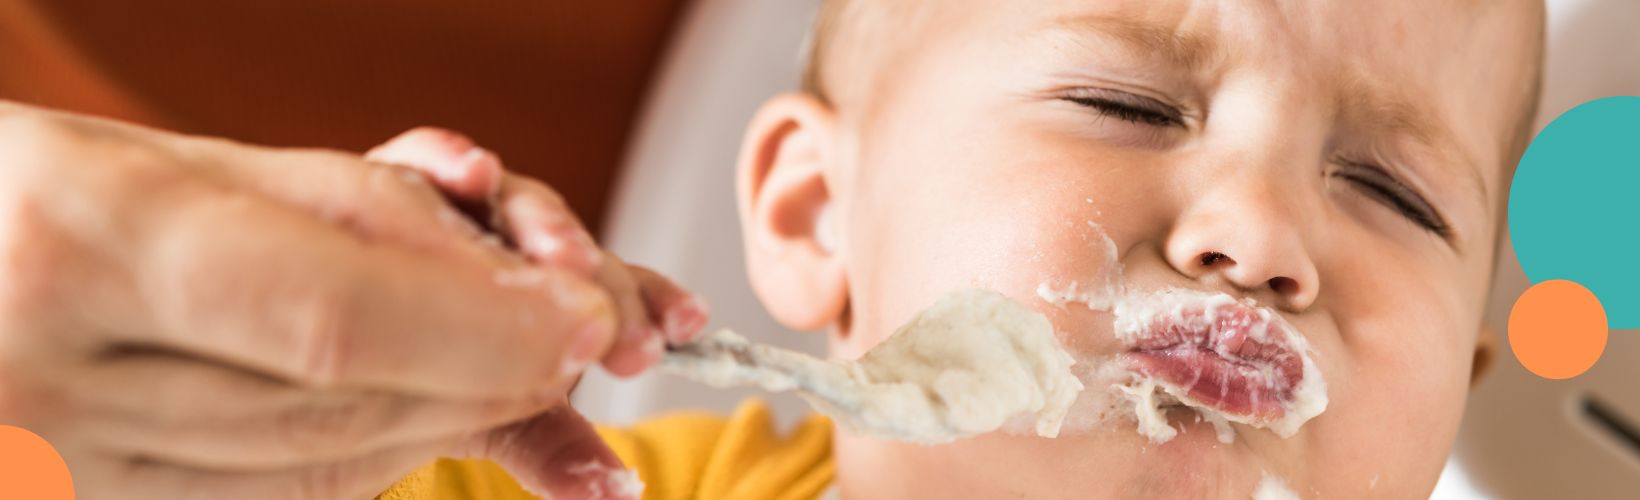 Brak apetytu u dziecka - jak rozwiązać problem?